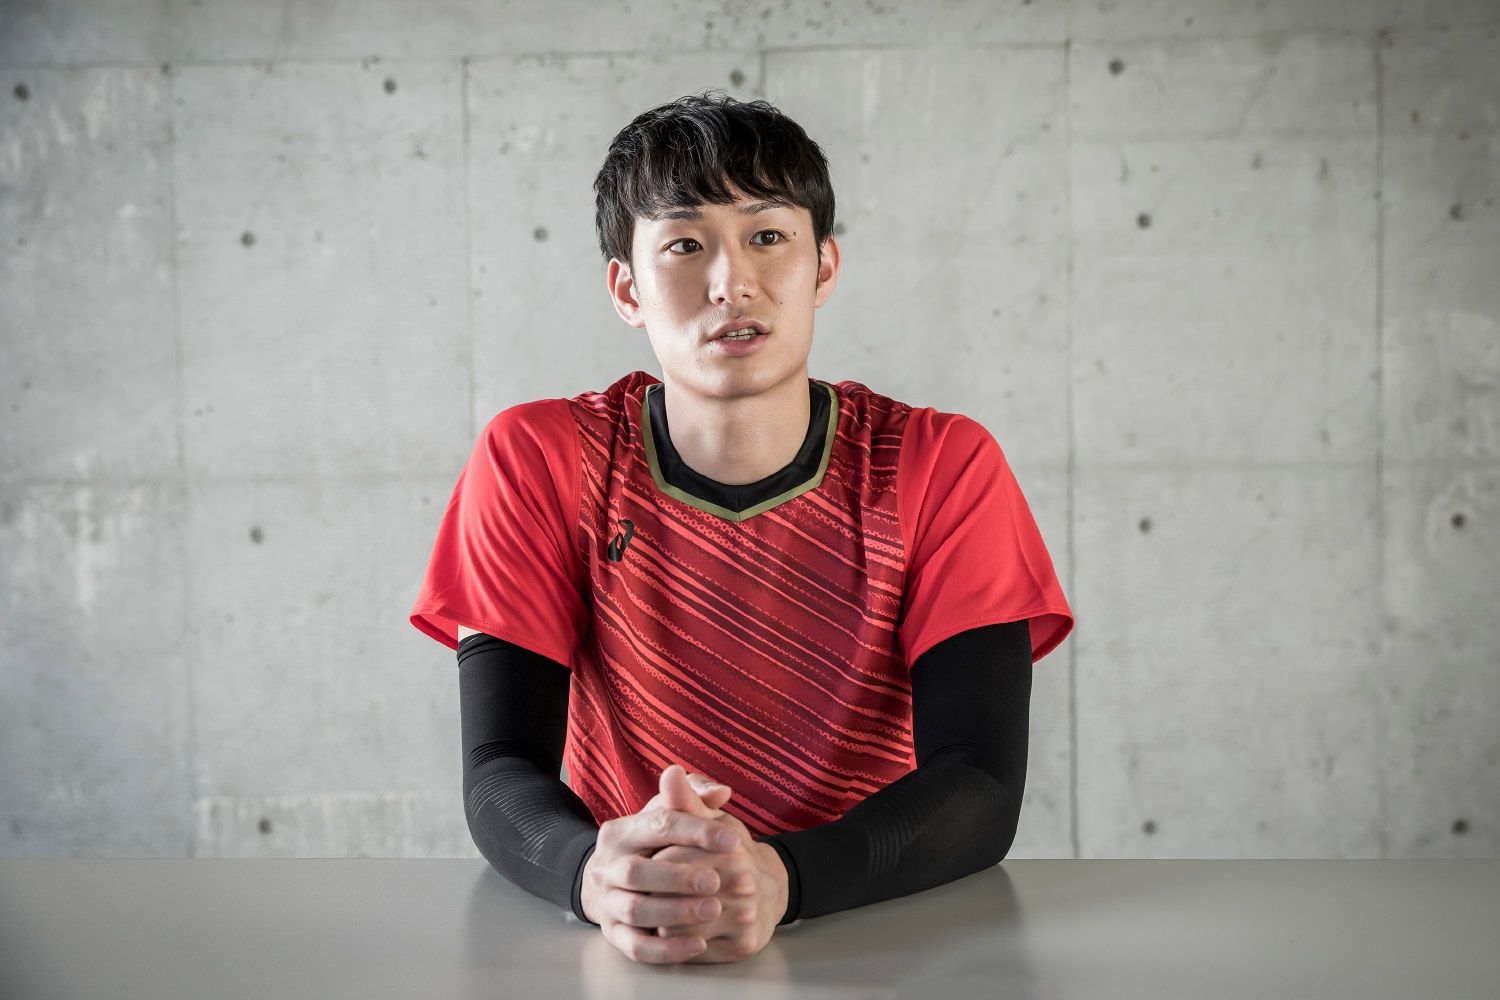 バレーボール男子日本代表・柳田将洋選手が語るプロの矜持と道具への